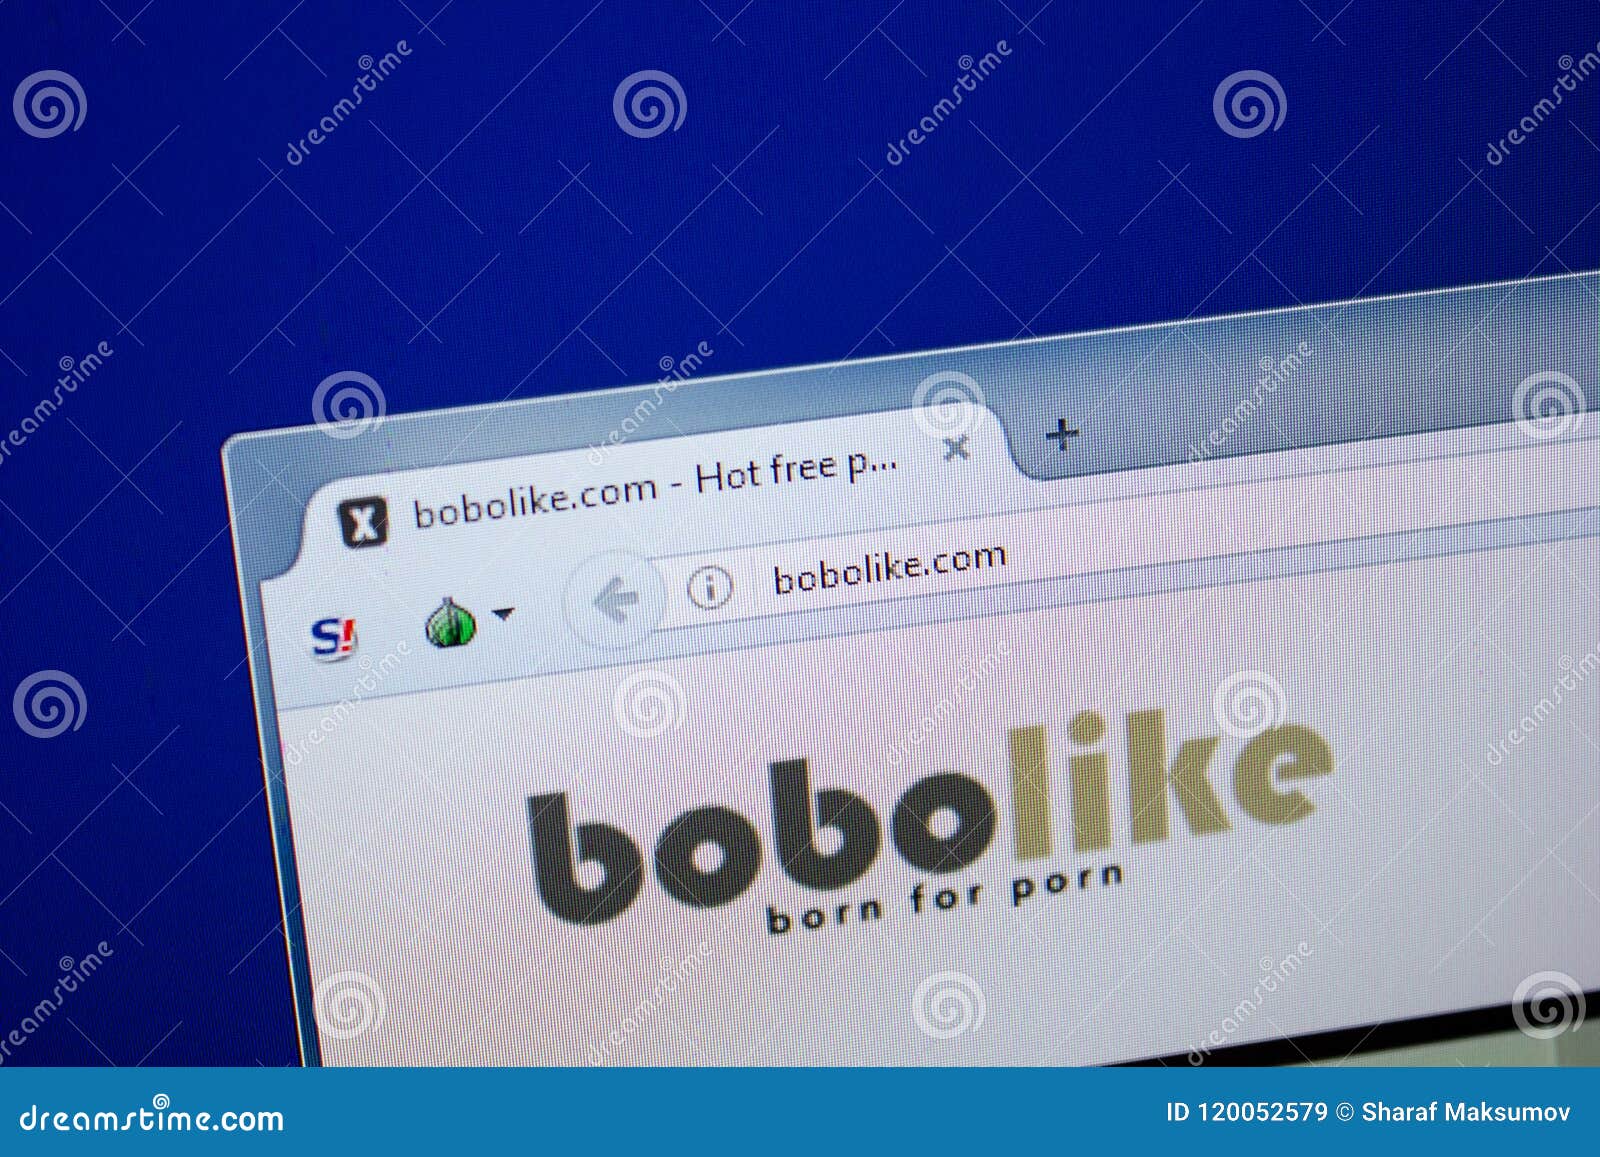 Bobolike com